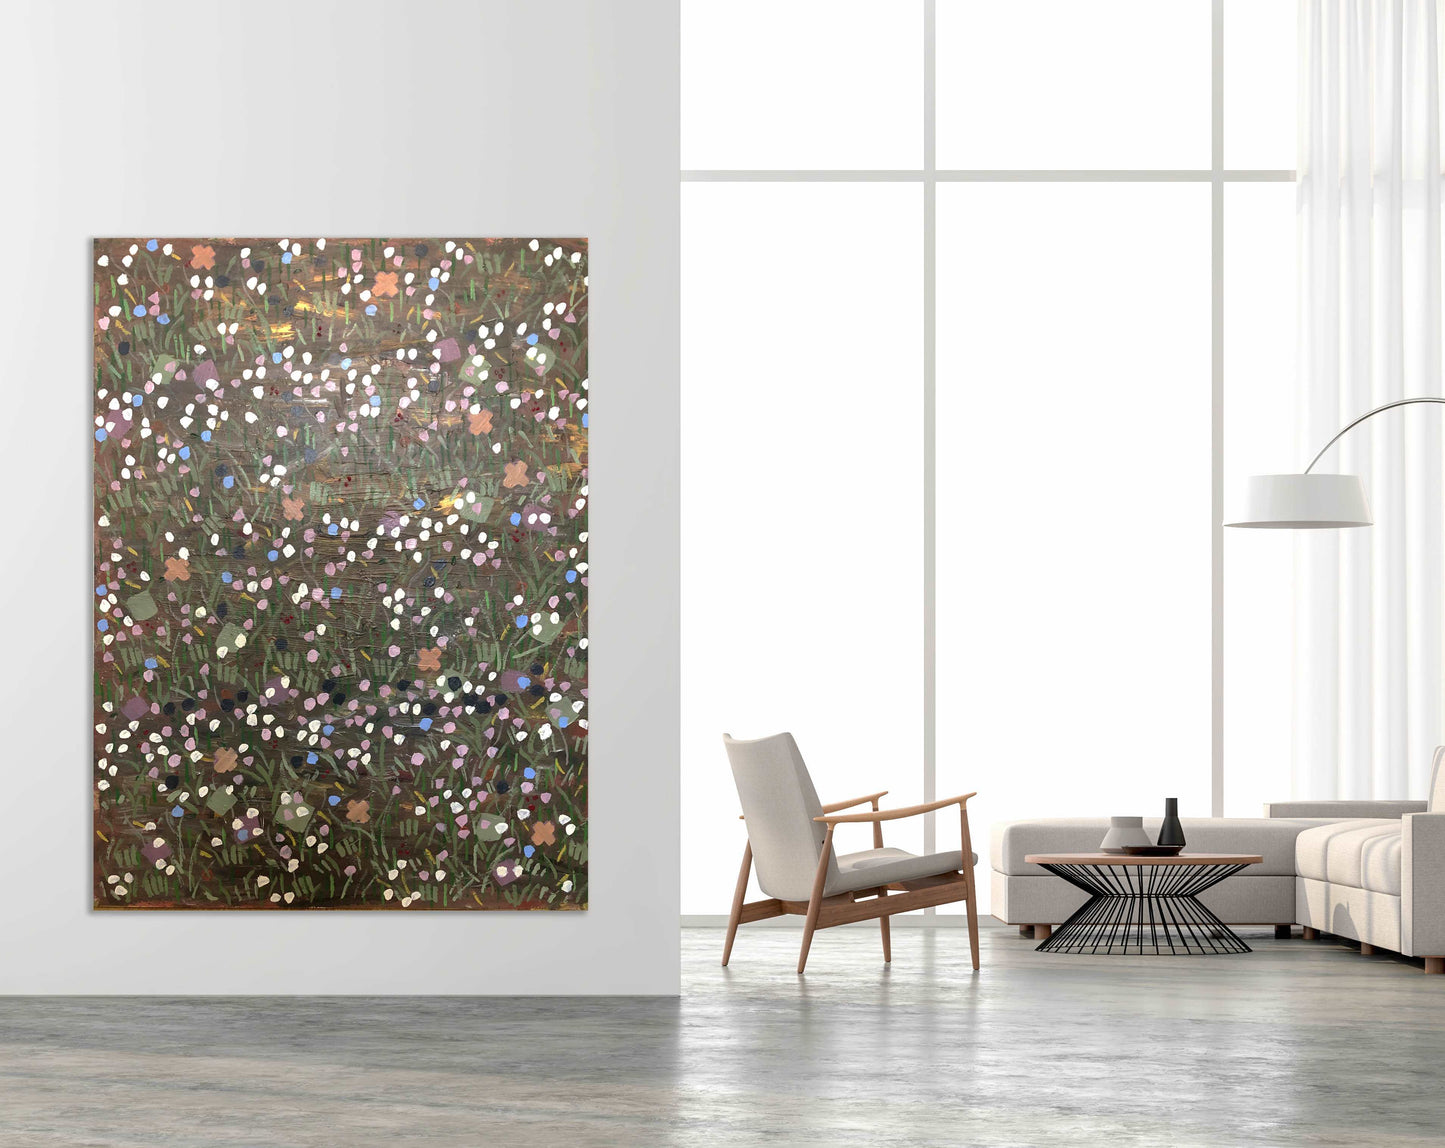 Composition 100B (2021) - 122 x 91cm, acrylic on canvas - Decopica